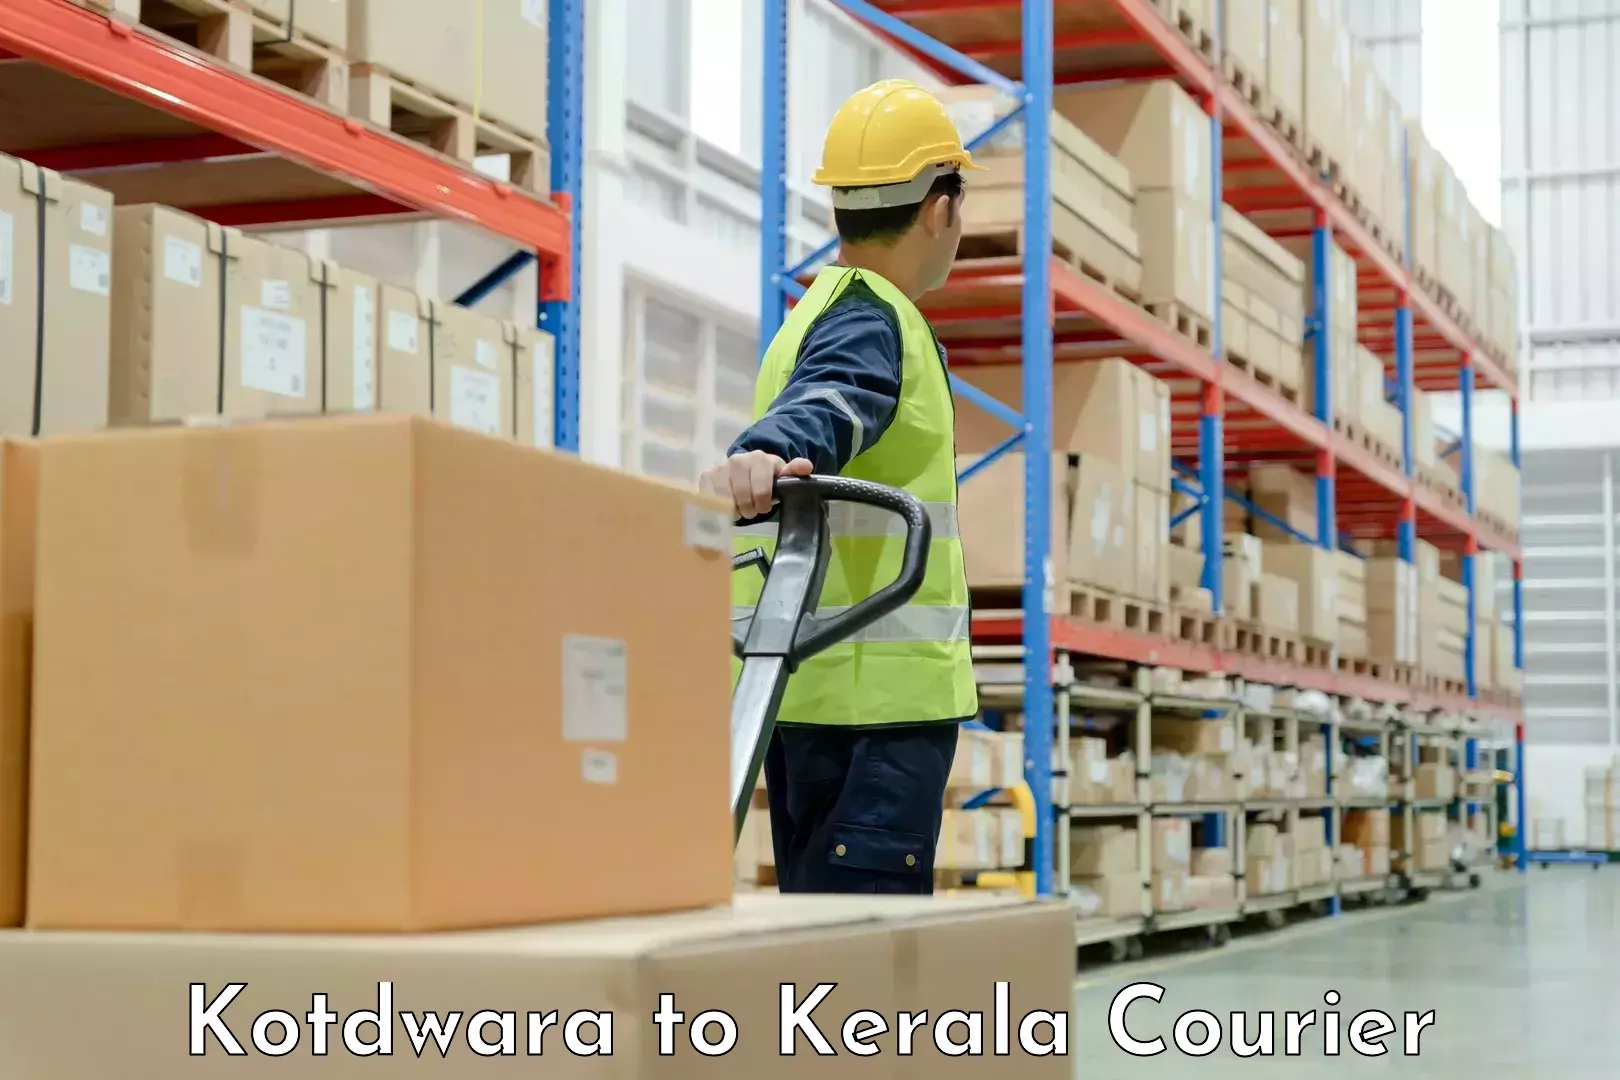 Hassle-free relocation Kotdwara to Kerala